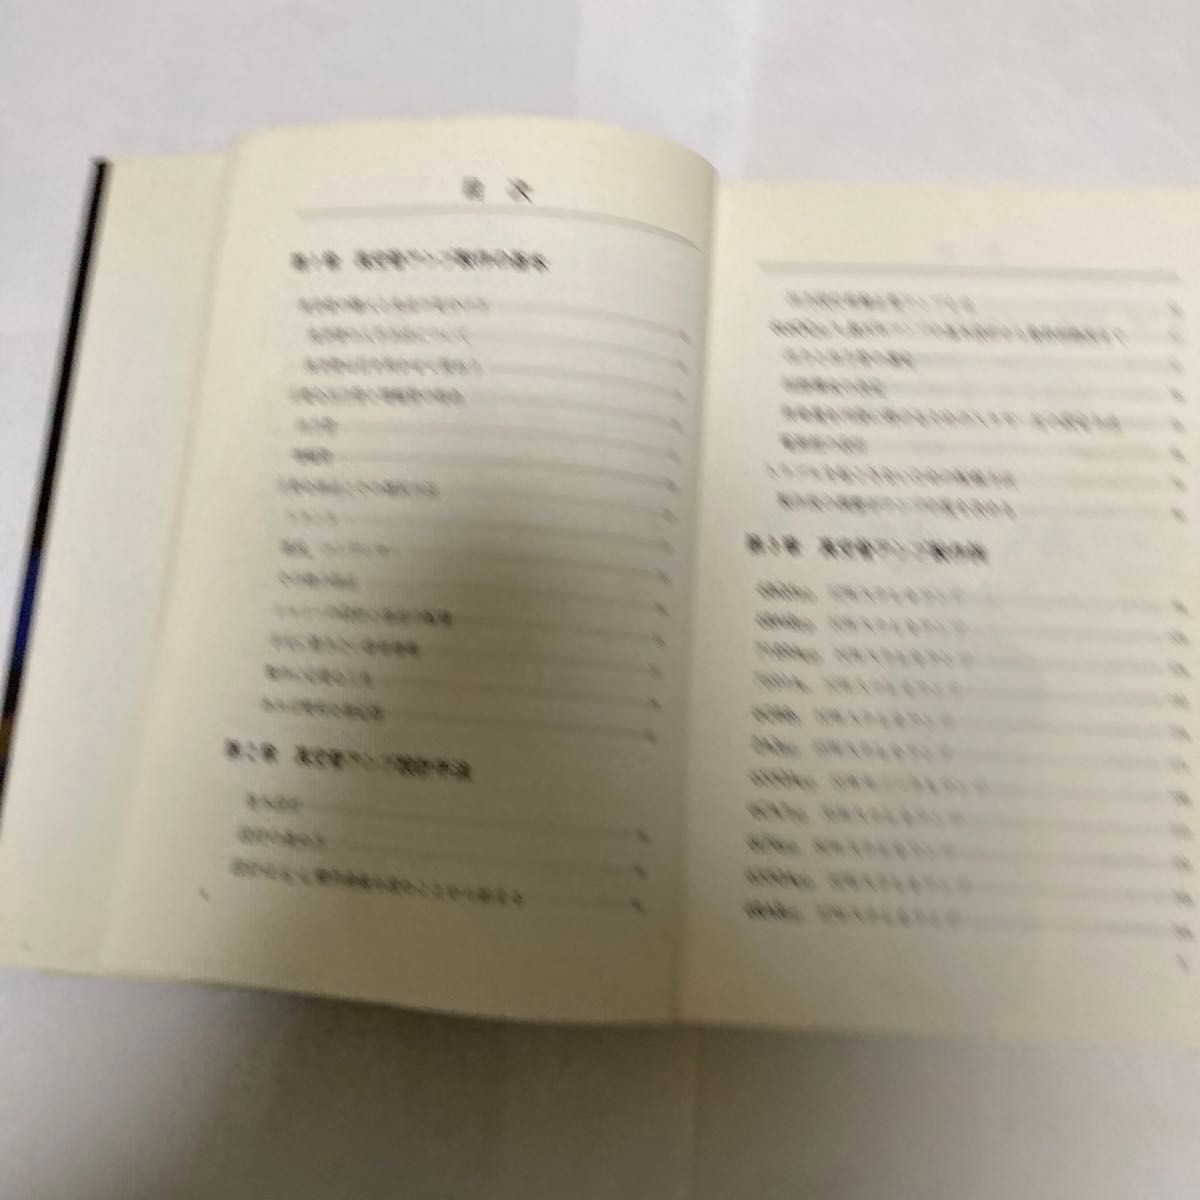 デジタル時代の真空管アンプ　完全製作12例　黒川達夫氏著　1989年4月第2刷発行  誠文堂新光社刊　なかなか本です。